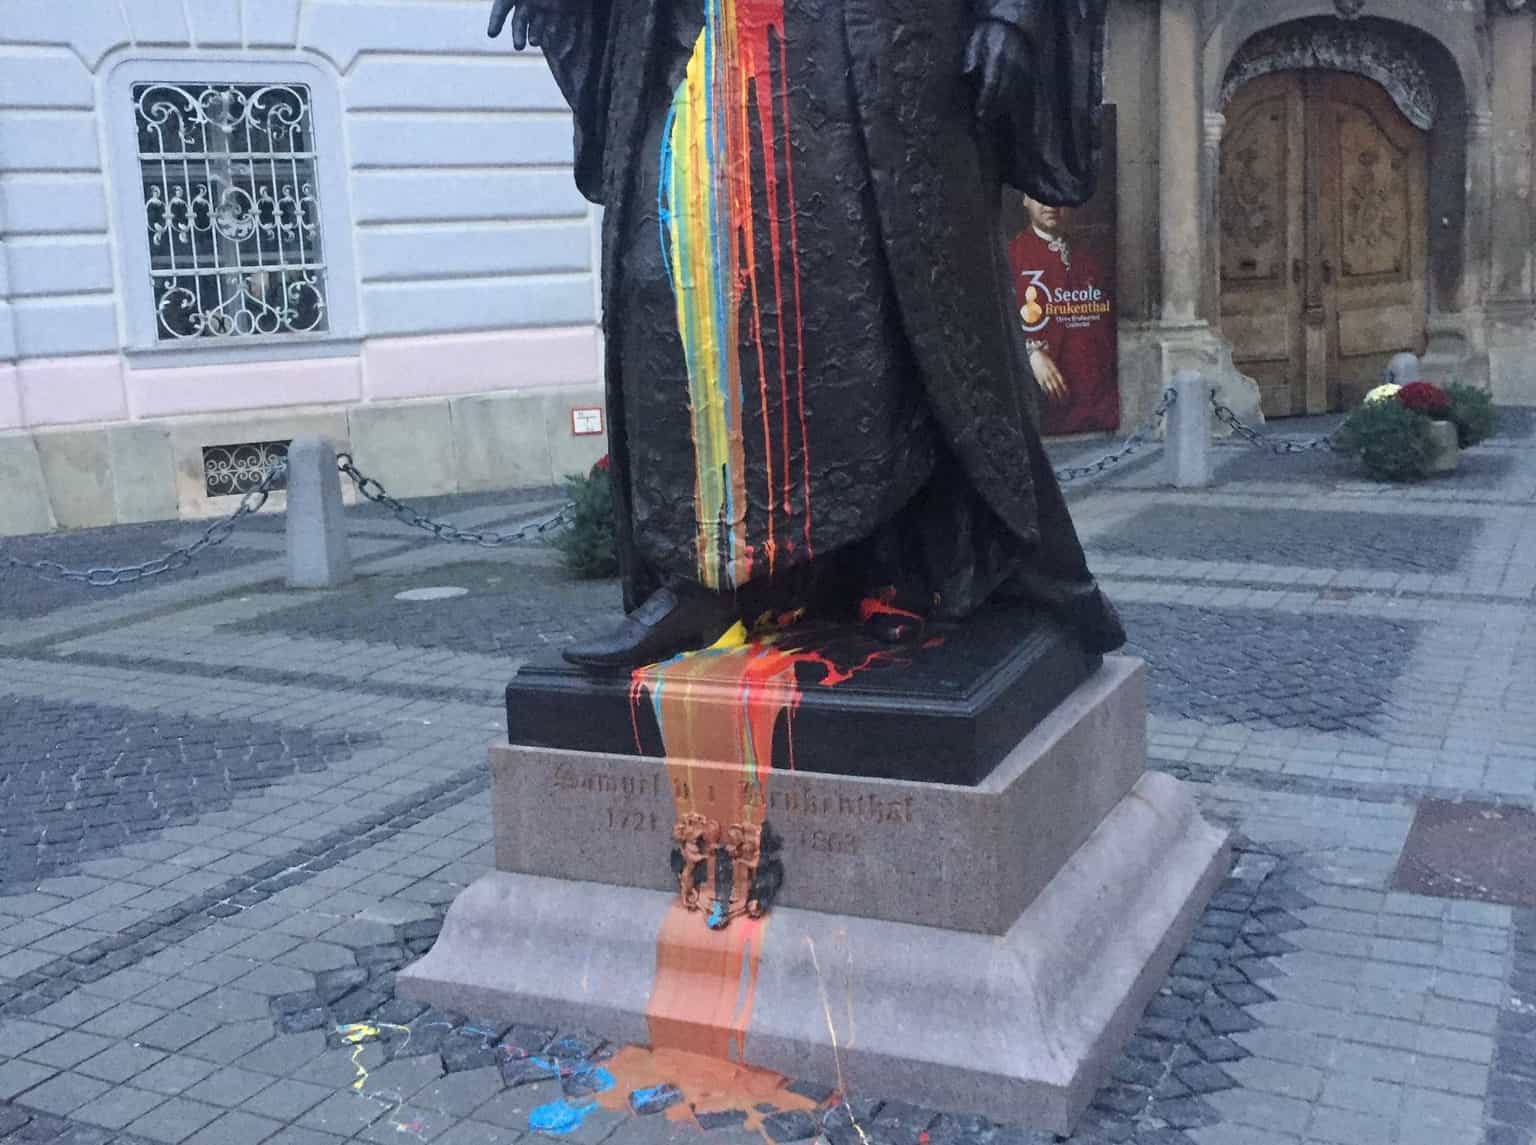 un bărbat a aruncat cu vopsea pe statuia lui brukenthal din piața mare - poliția a deschis o anchetă